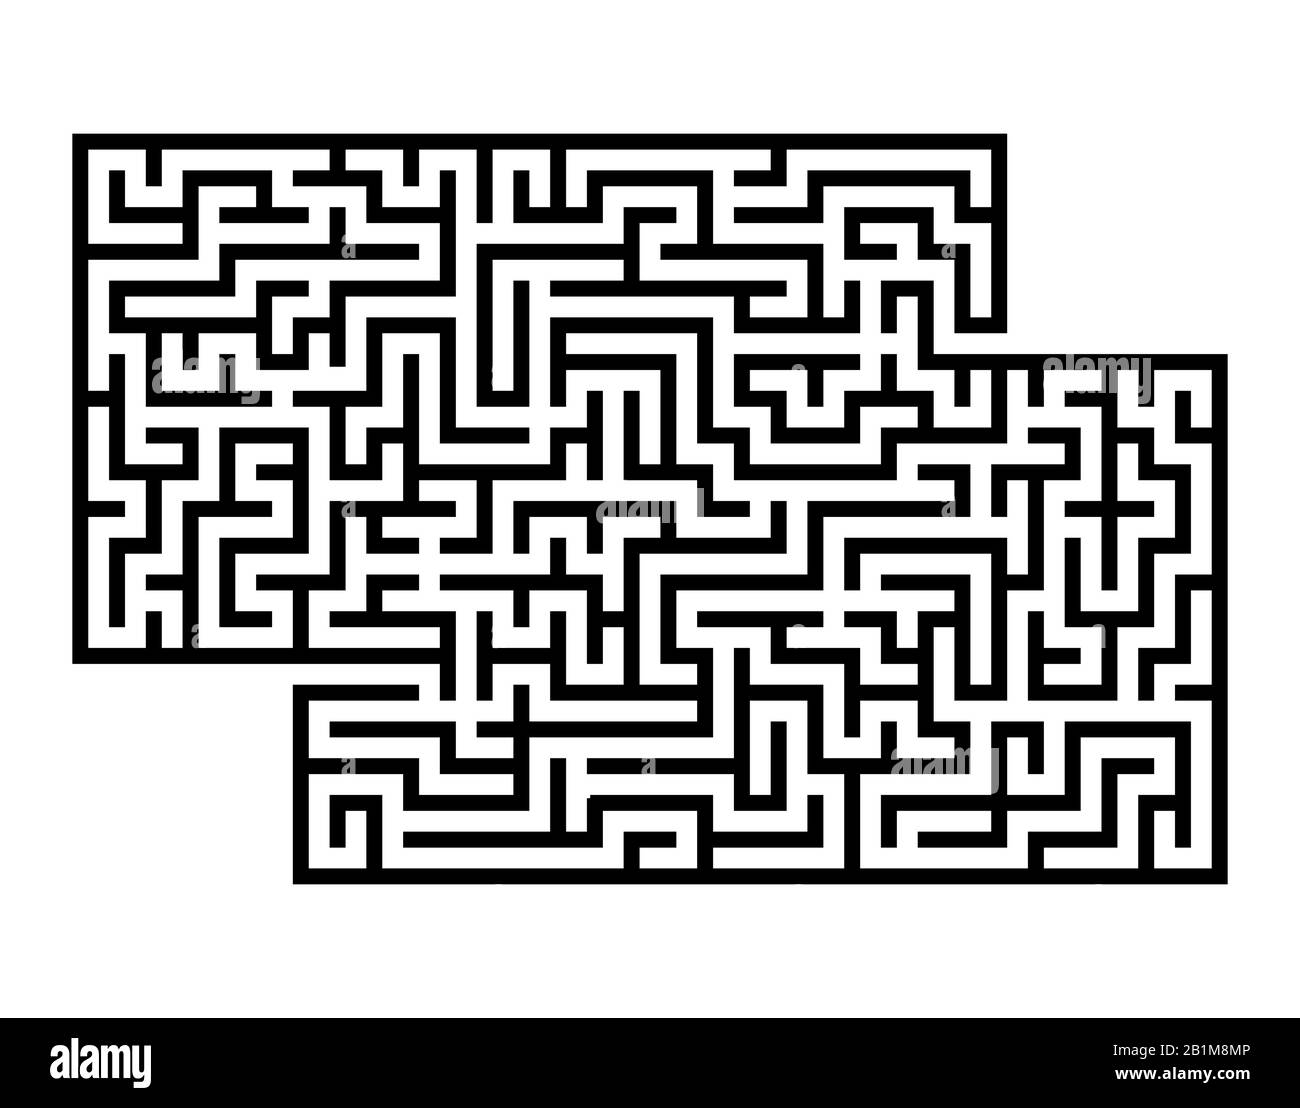 Labirinto rettangolare astratto. Gioco per bambini. Puzzle per bambini. Labirinto enigma. Immagine vettoriale piatta isolata su sfondo bianco. Con posto Illustrazione Vettoriale